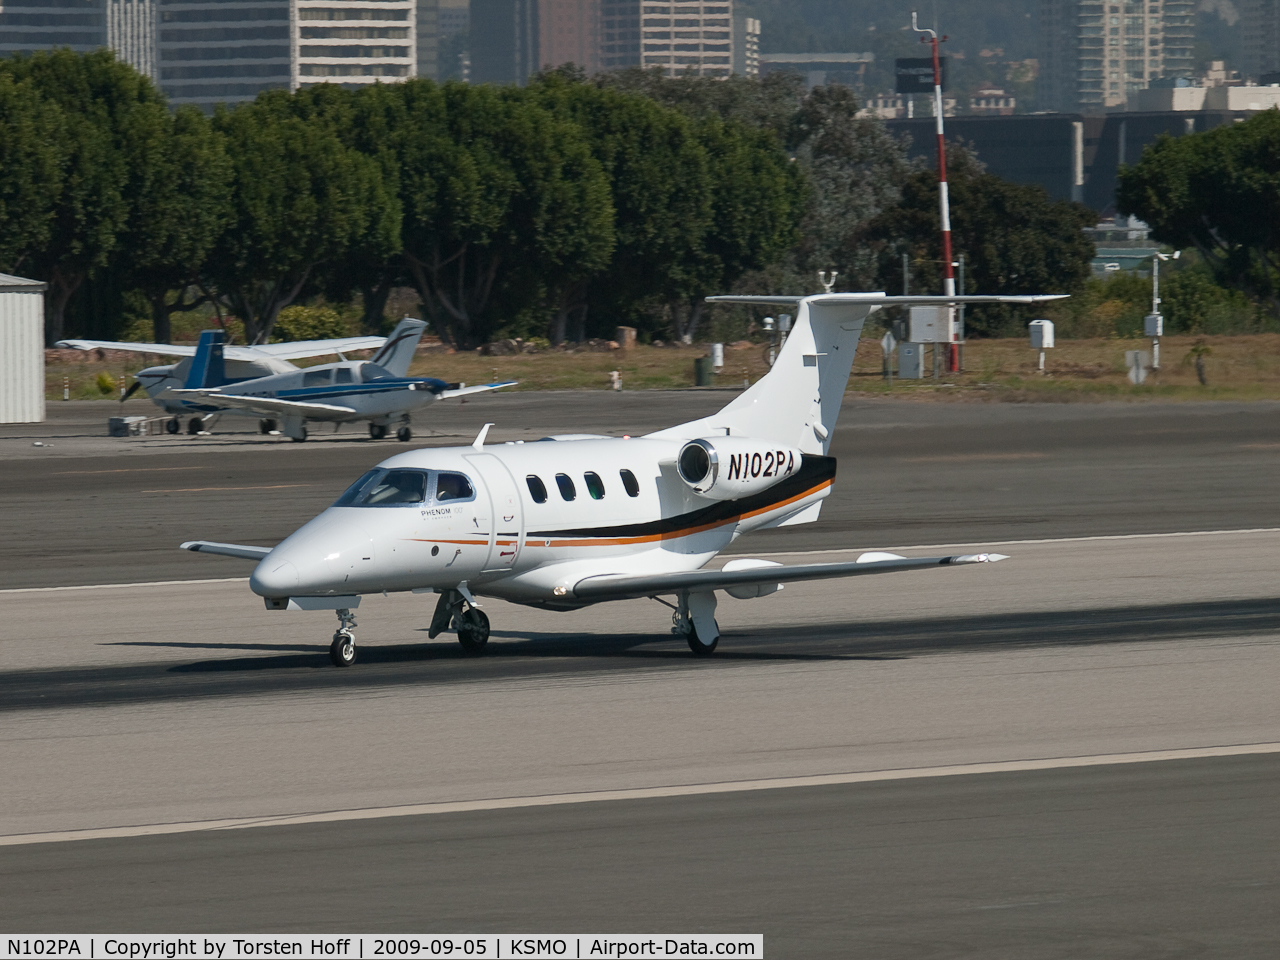 N102PA, 2009 Embraer EMB-500 Phenom 100 C/N 50000030, N102PA departing from RWY 21